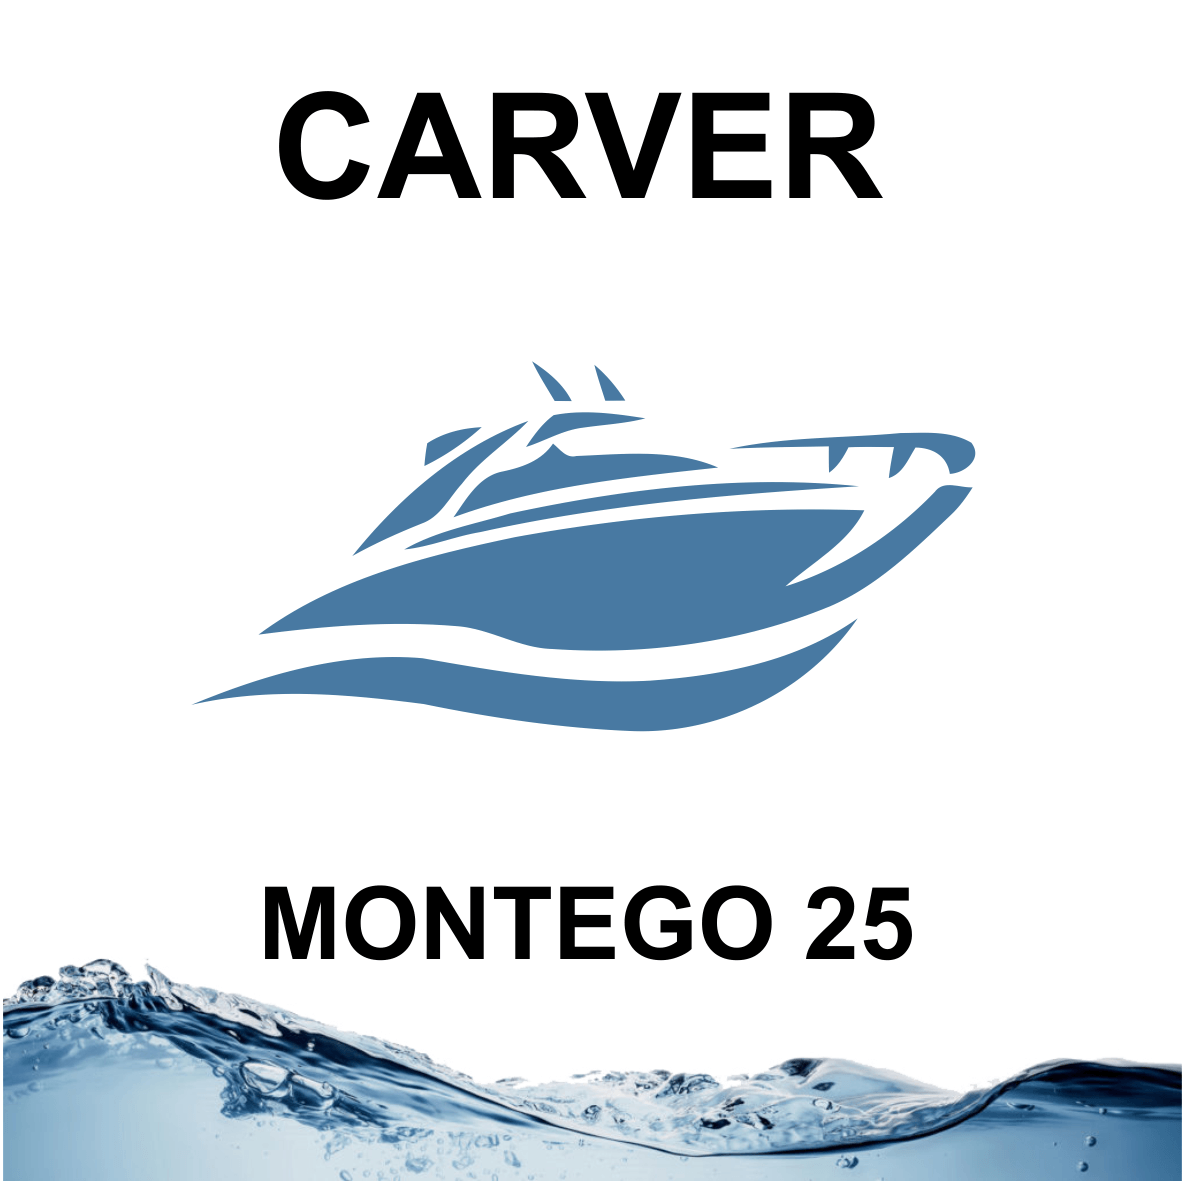 Carver Montego 25